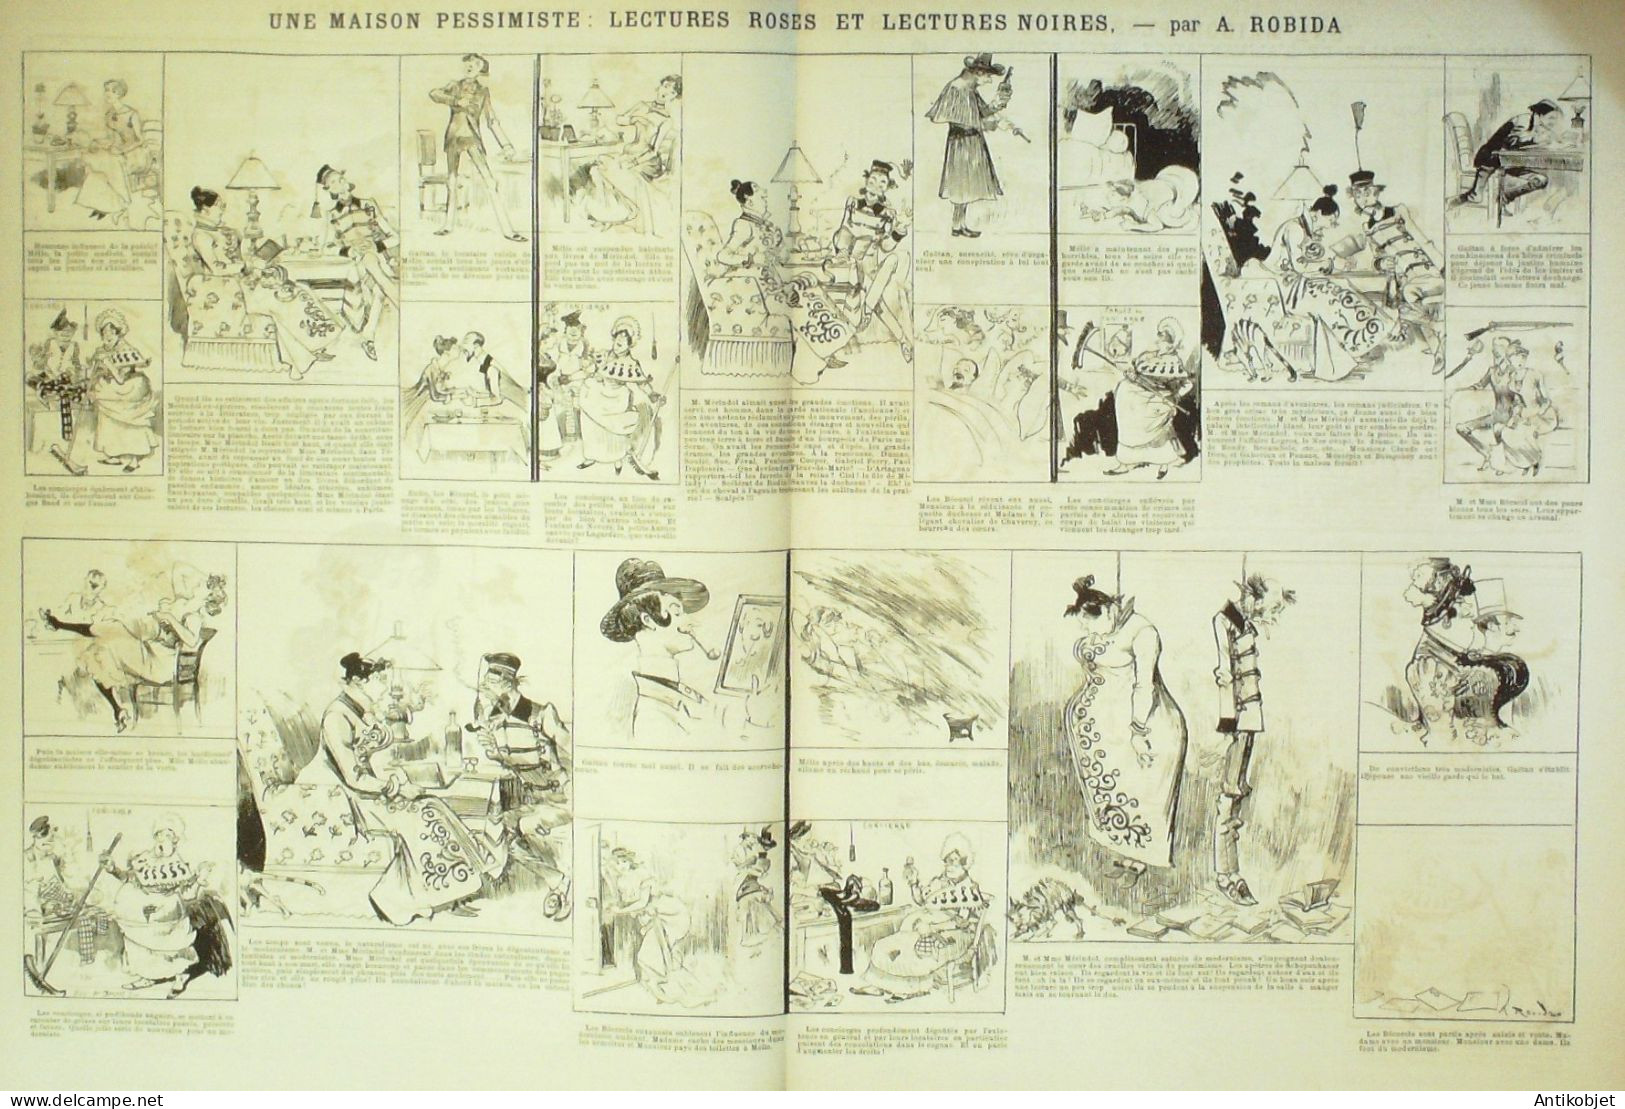 La Caricature 1886 N°323 Revue Décadente Noire Halles Centrales Robida - Revues Anciennes - Avant 1900